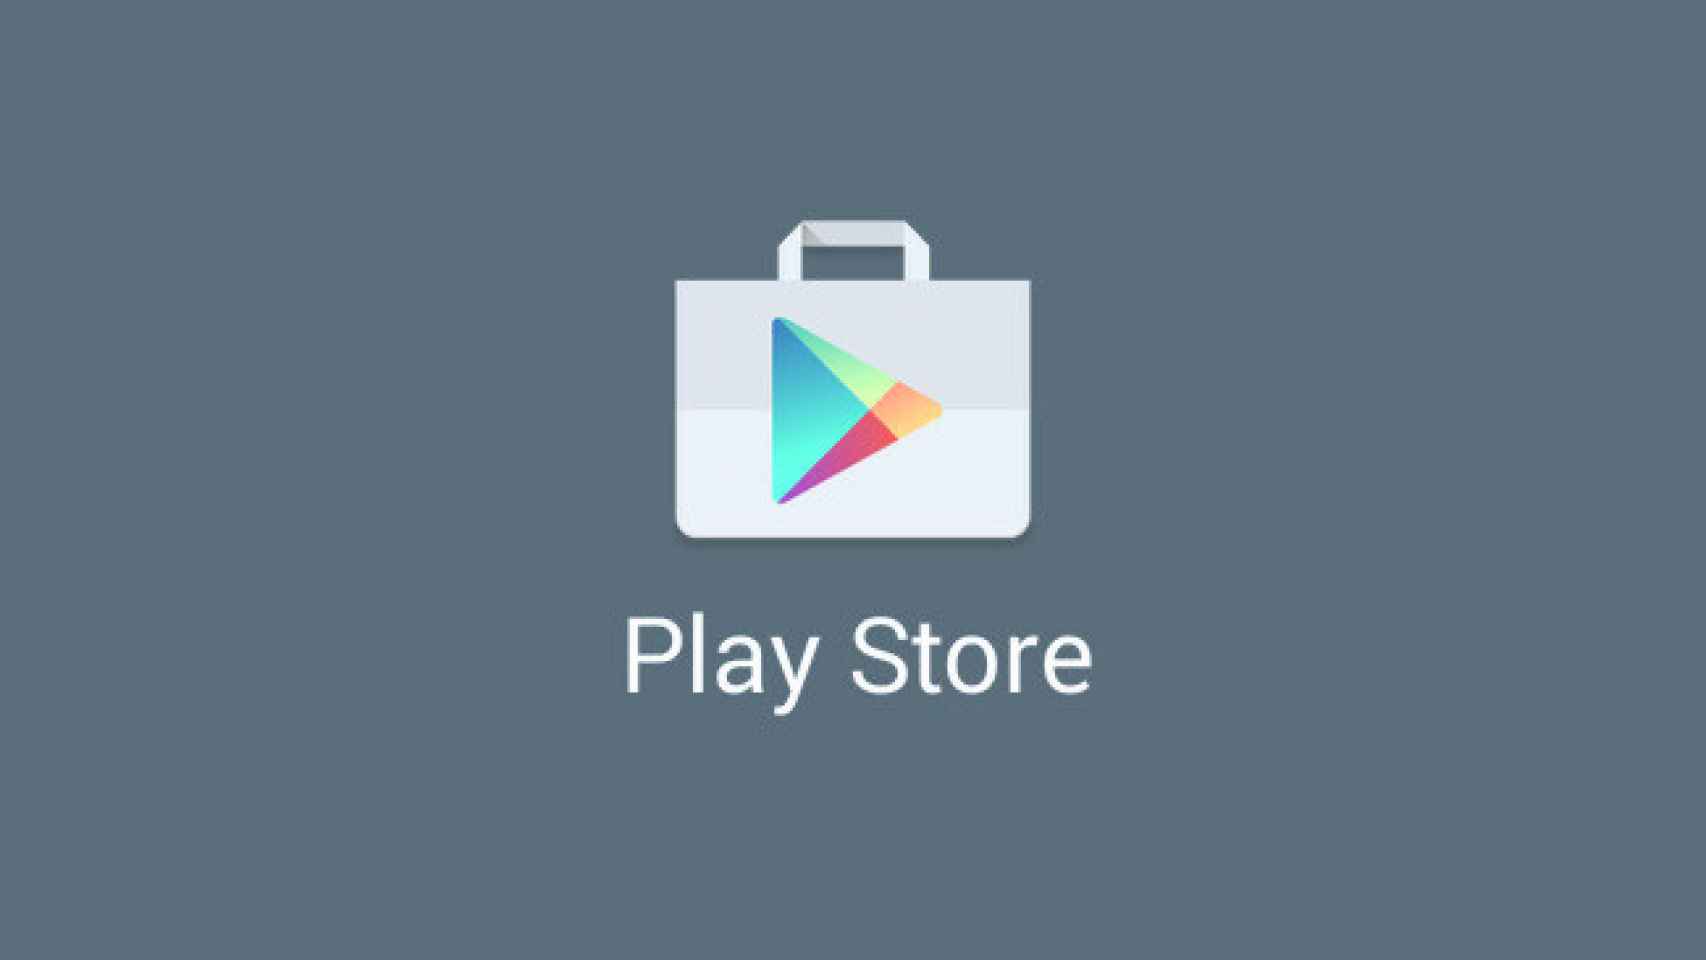 Descarga e instala la última versión de la Google Play Store